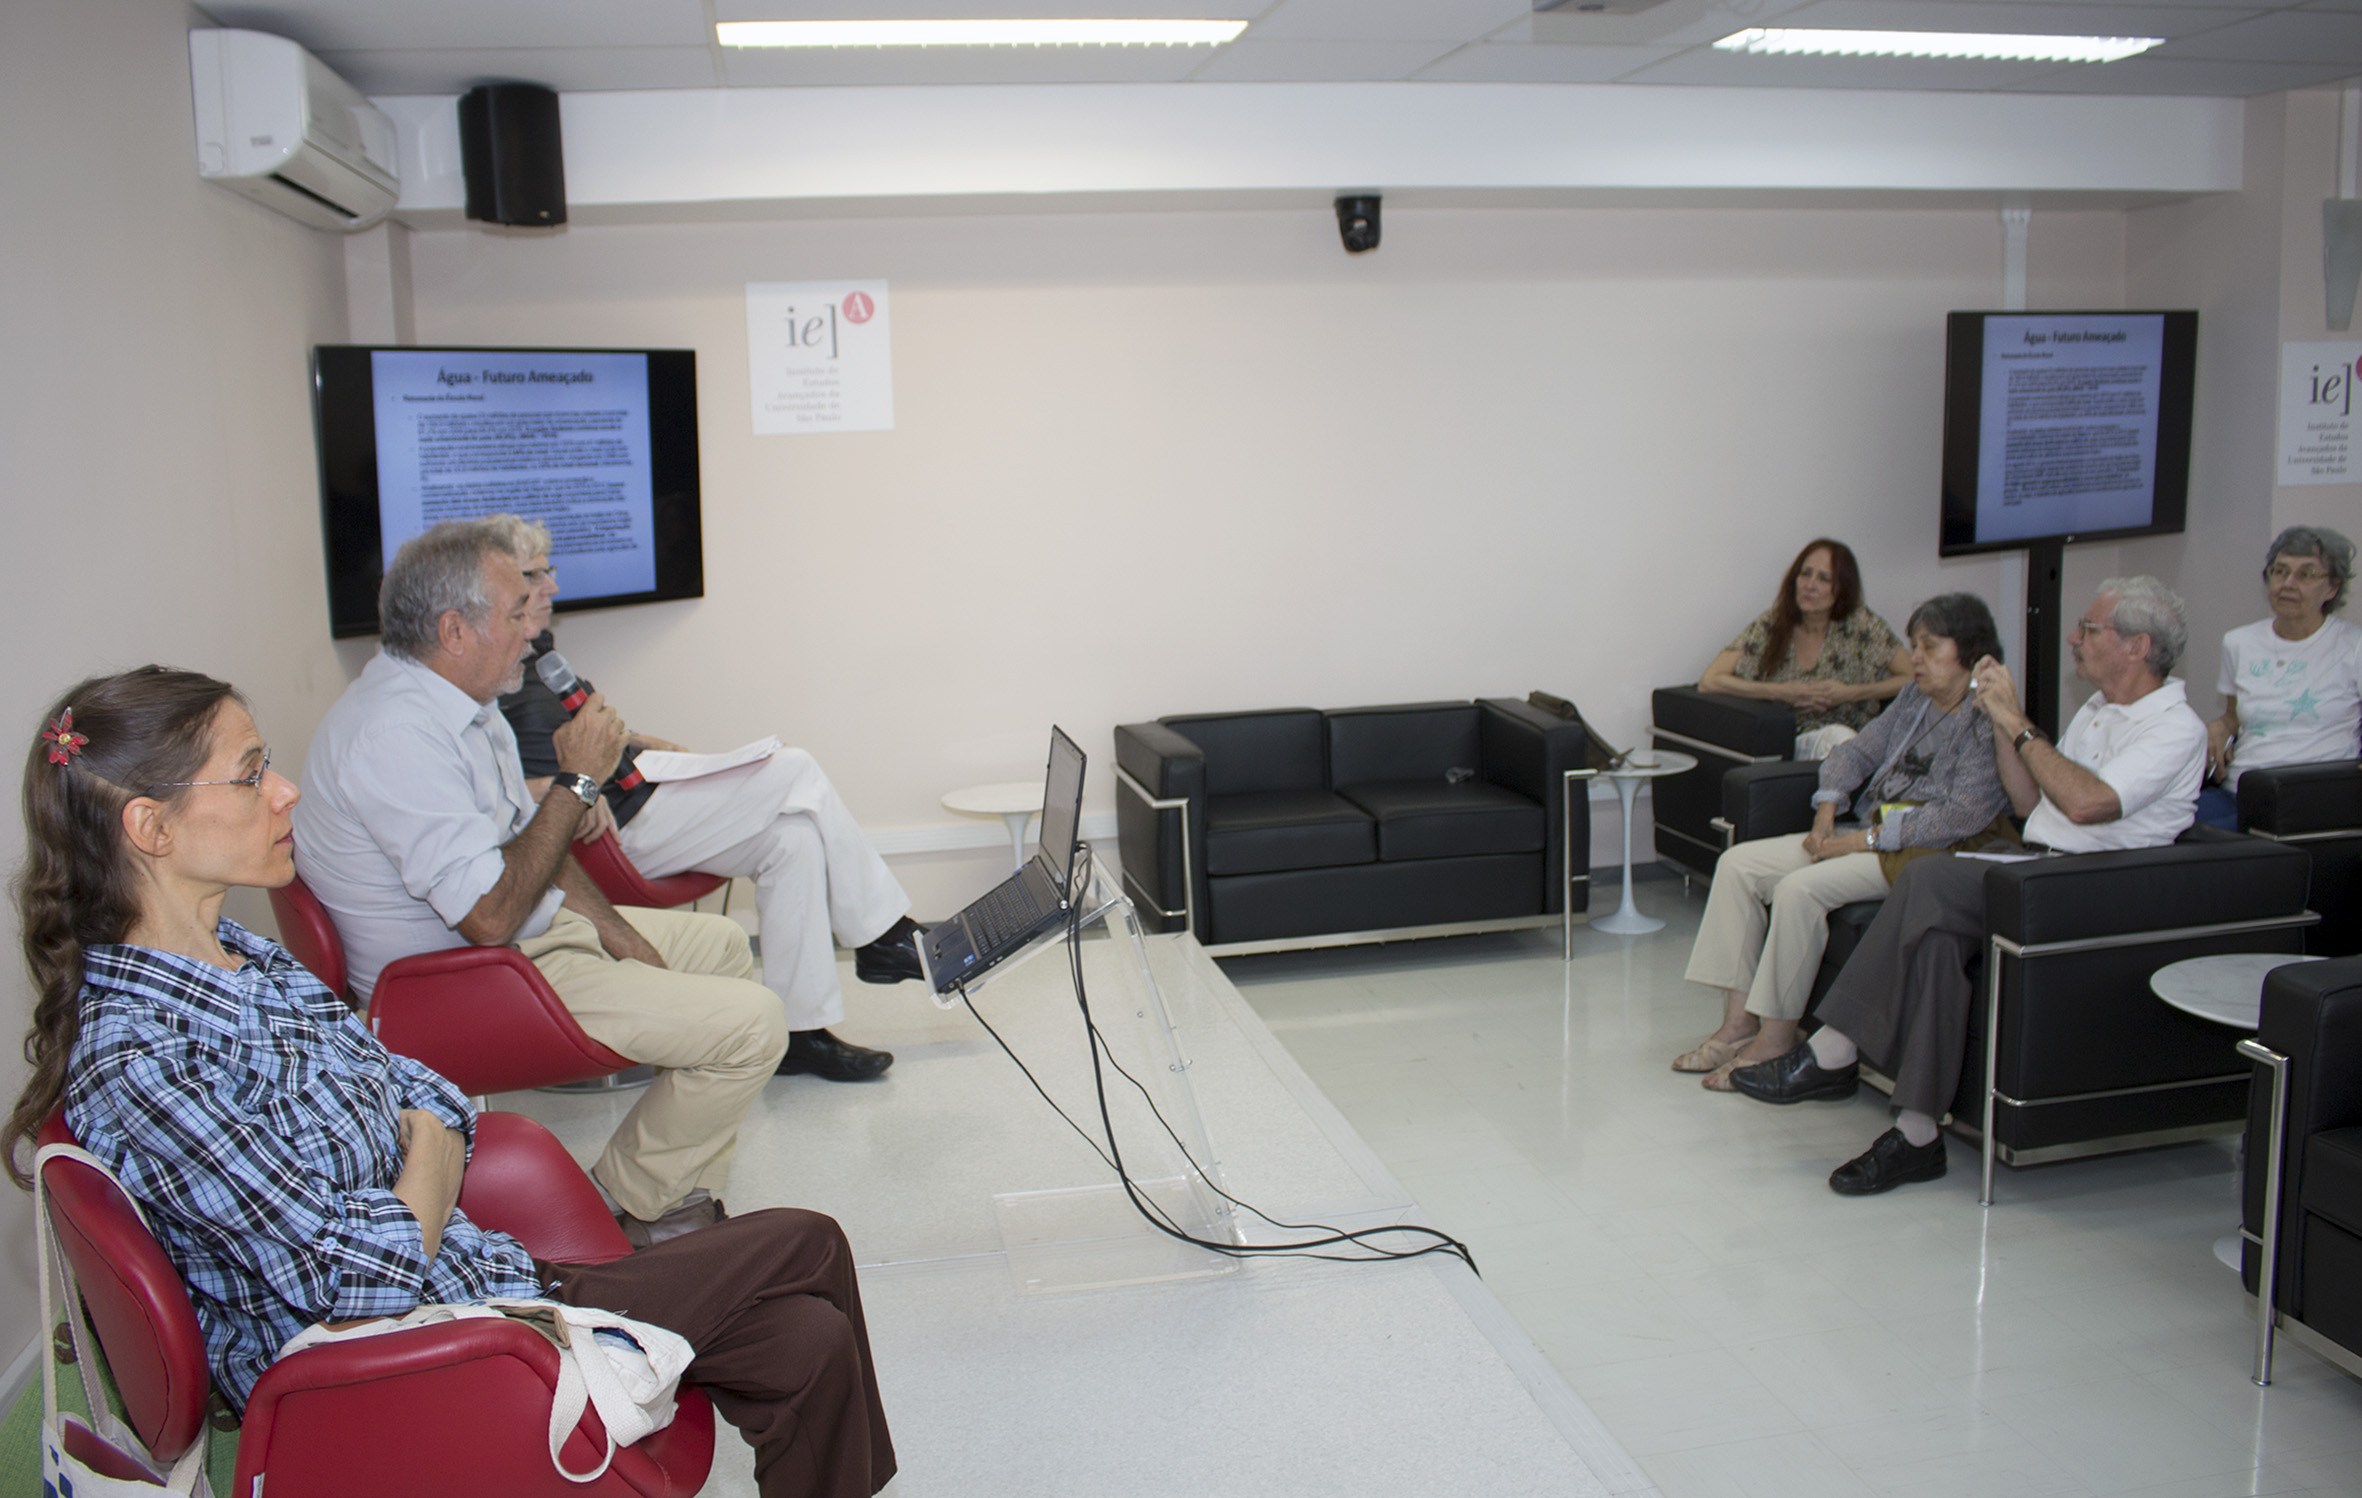 Suzana Prizendt, Marcio Automare e Pedro Jacobi em debate com participante do público